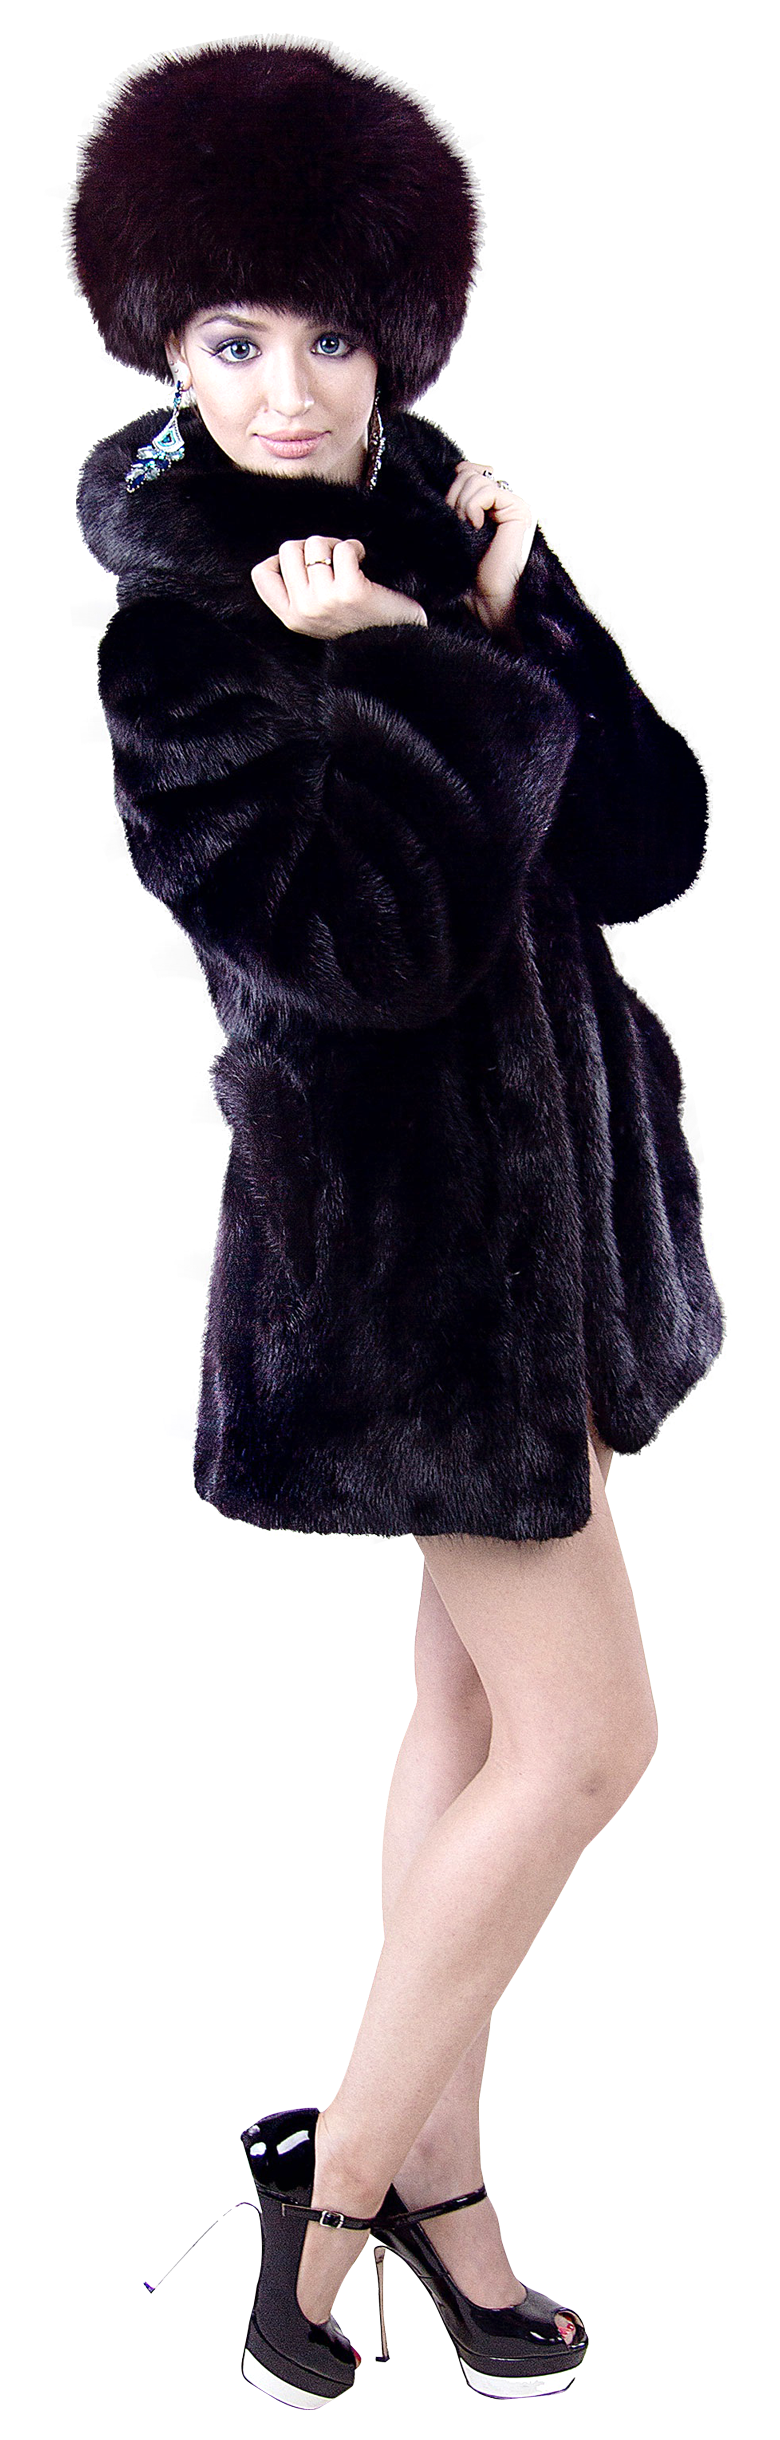 A Woman In A Black Fur Coat